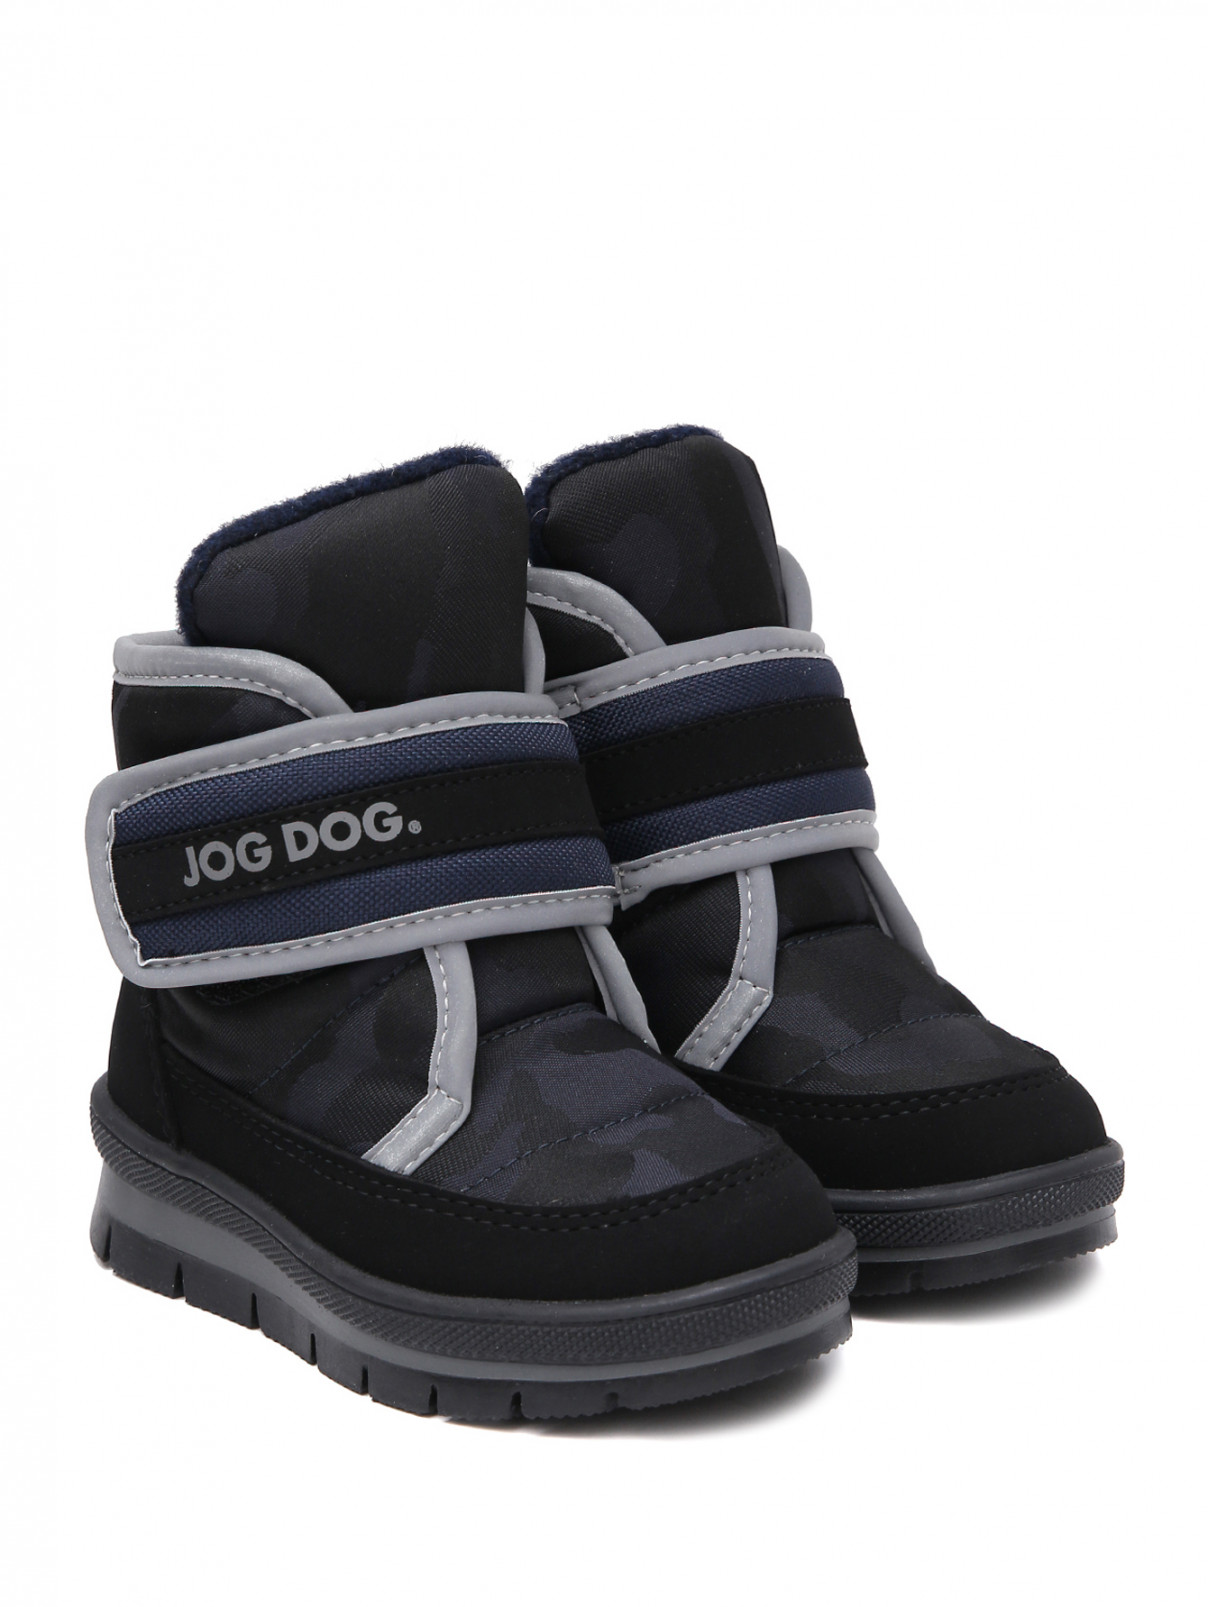 Дутые утепленные ботинки на липучке JOG DOG  –  Общий вид  – Цвет:  Черный